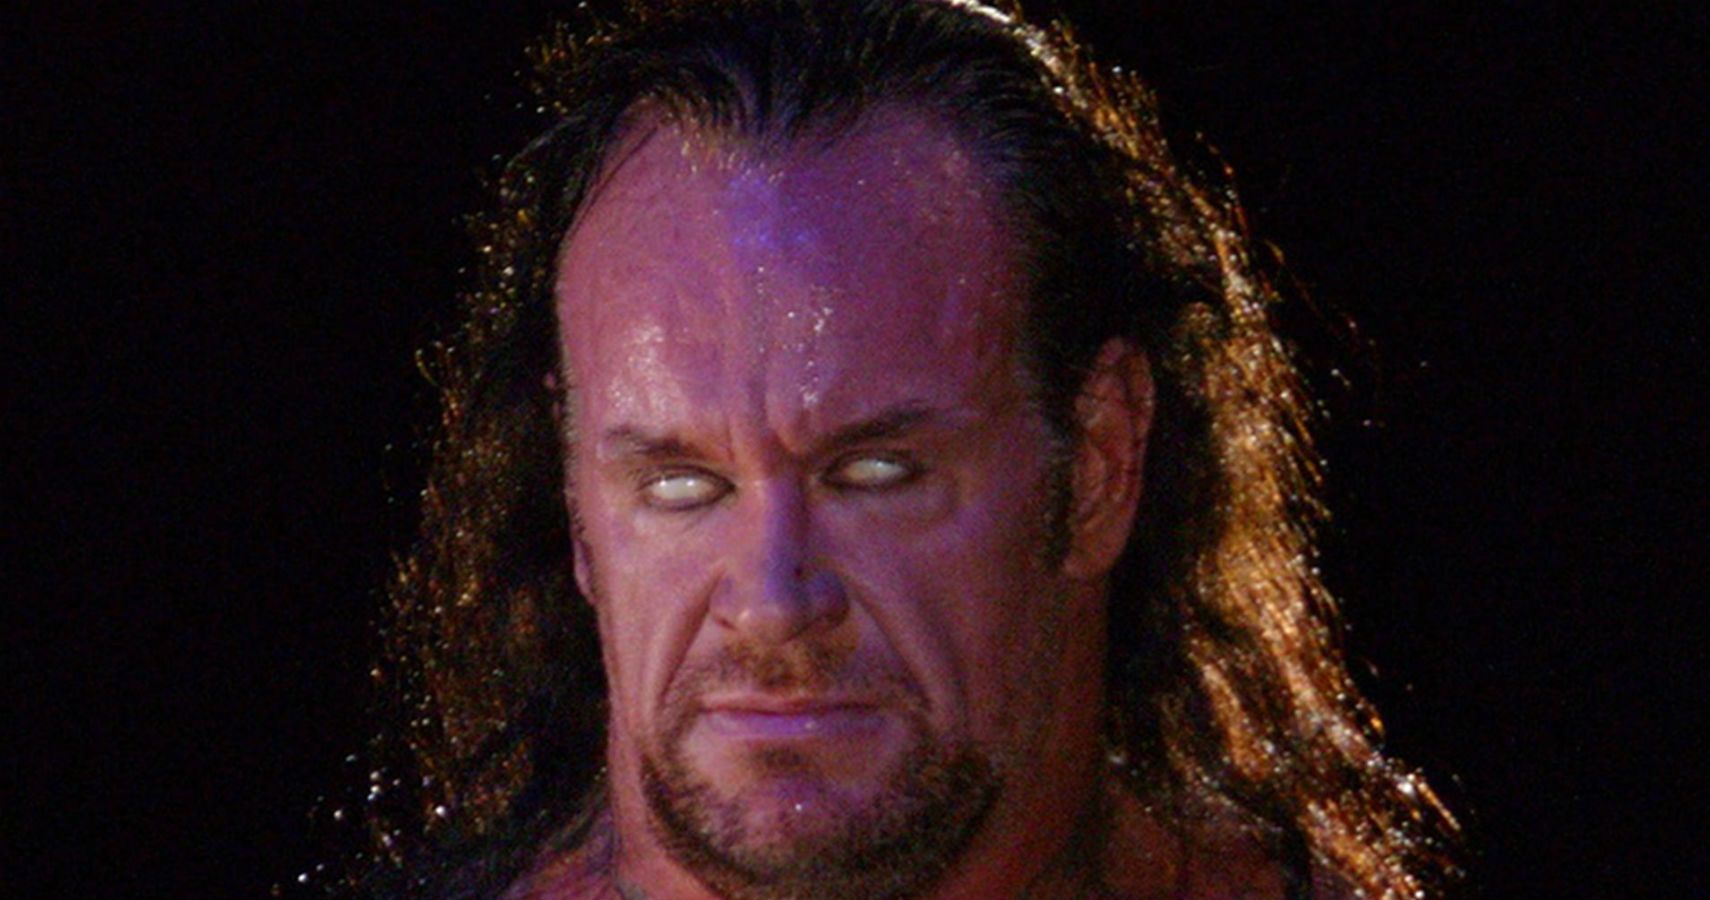 Biggest Rumors In WWE This Week - Undertaker Training For A Return? 